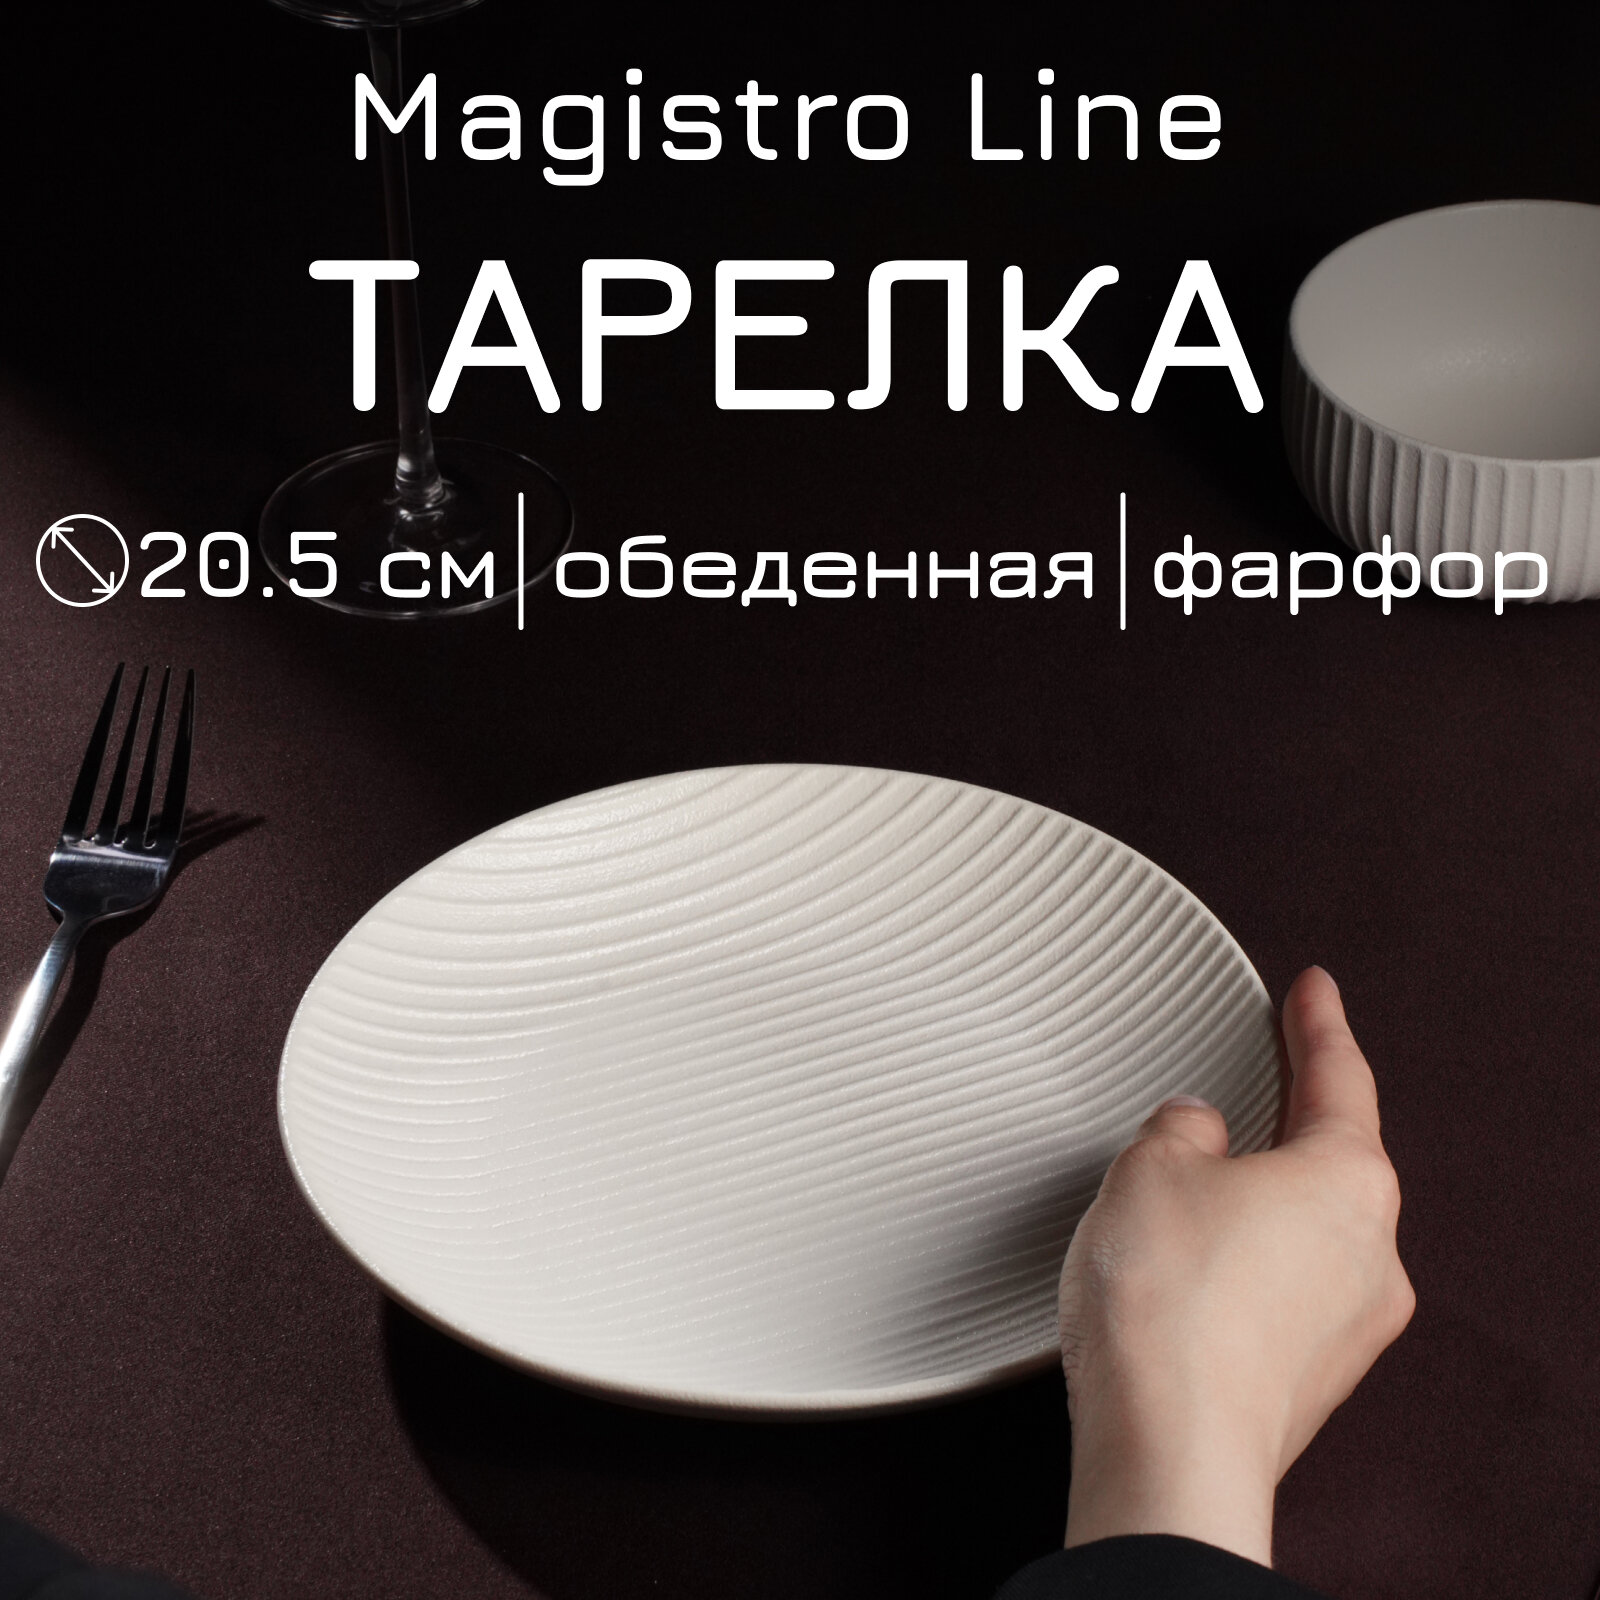 Тарелка Magistro Line, фарфоровая, d=20 см, для подачи блюд, сервировочная, рельефная, цвет белый